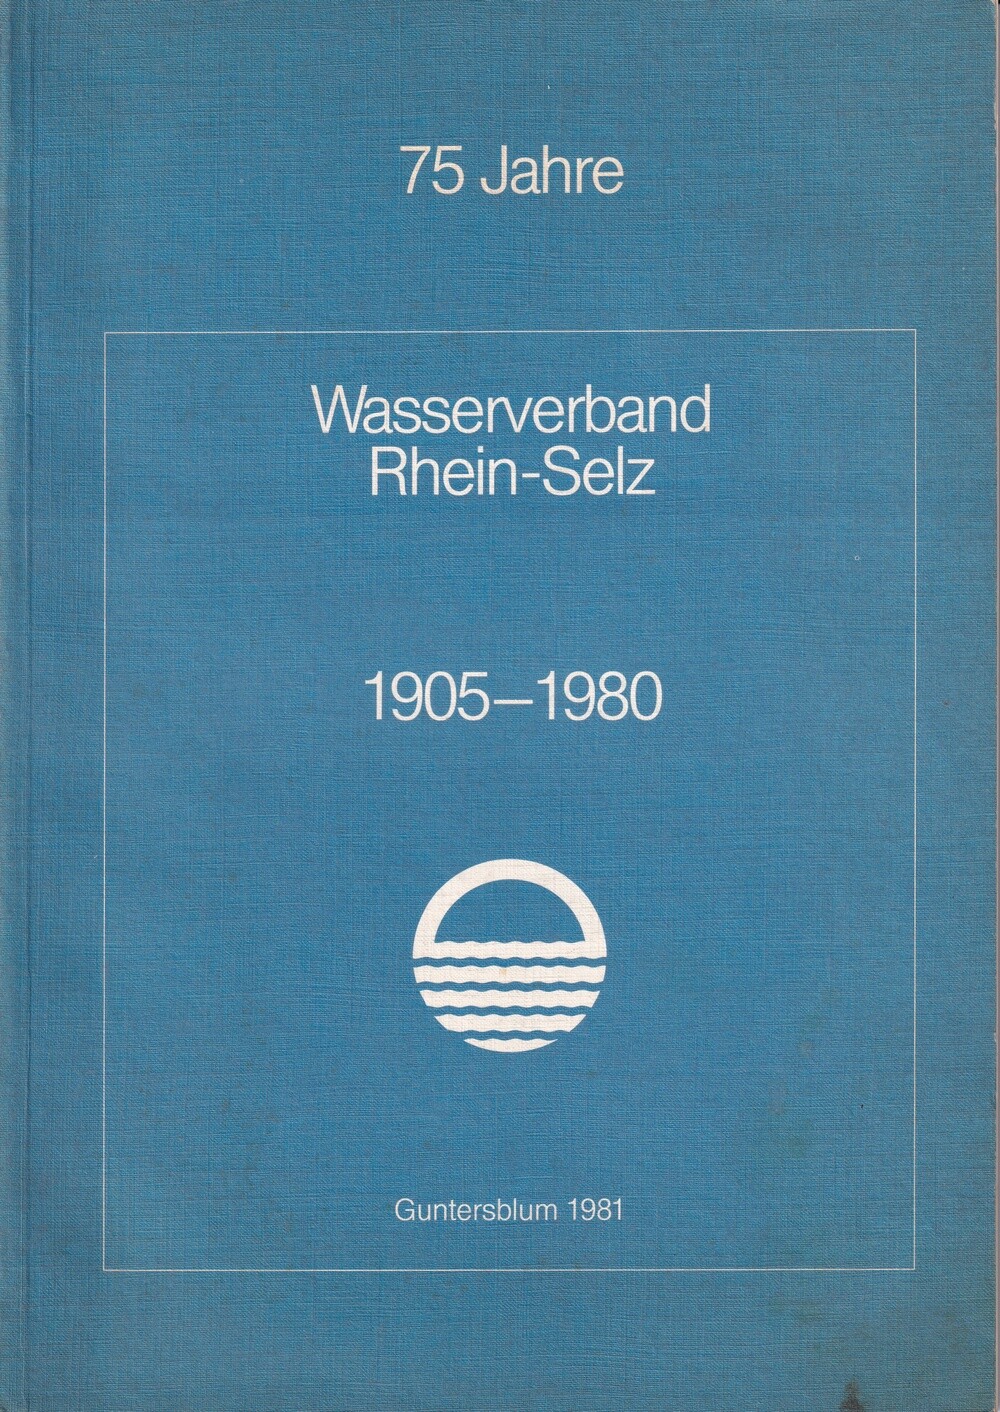 75 Jahre Wasserverband Rhein-Selz (Kulturverein Guntersblum CC BY-NC-SA)